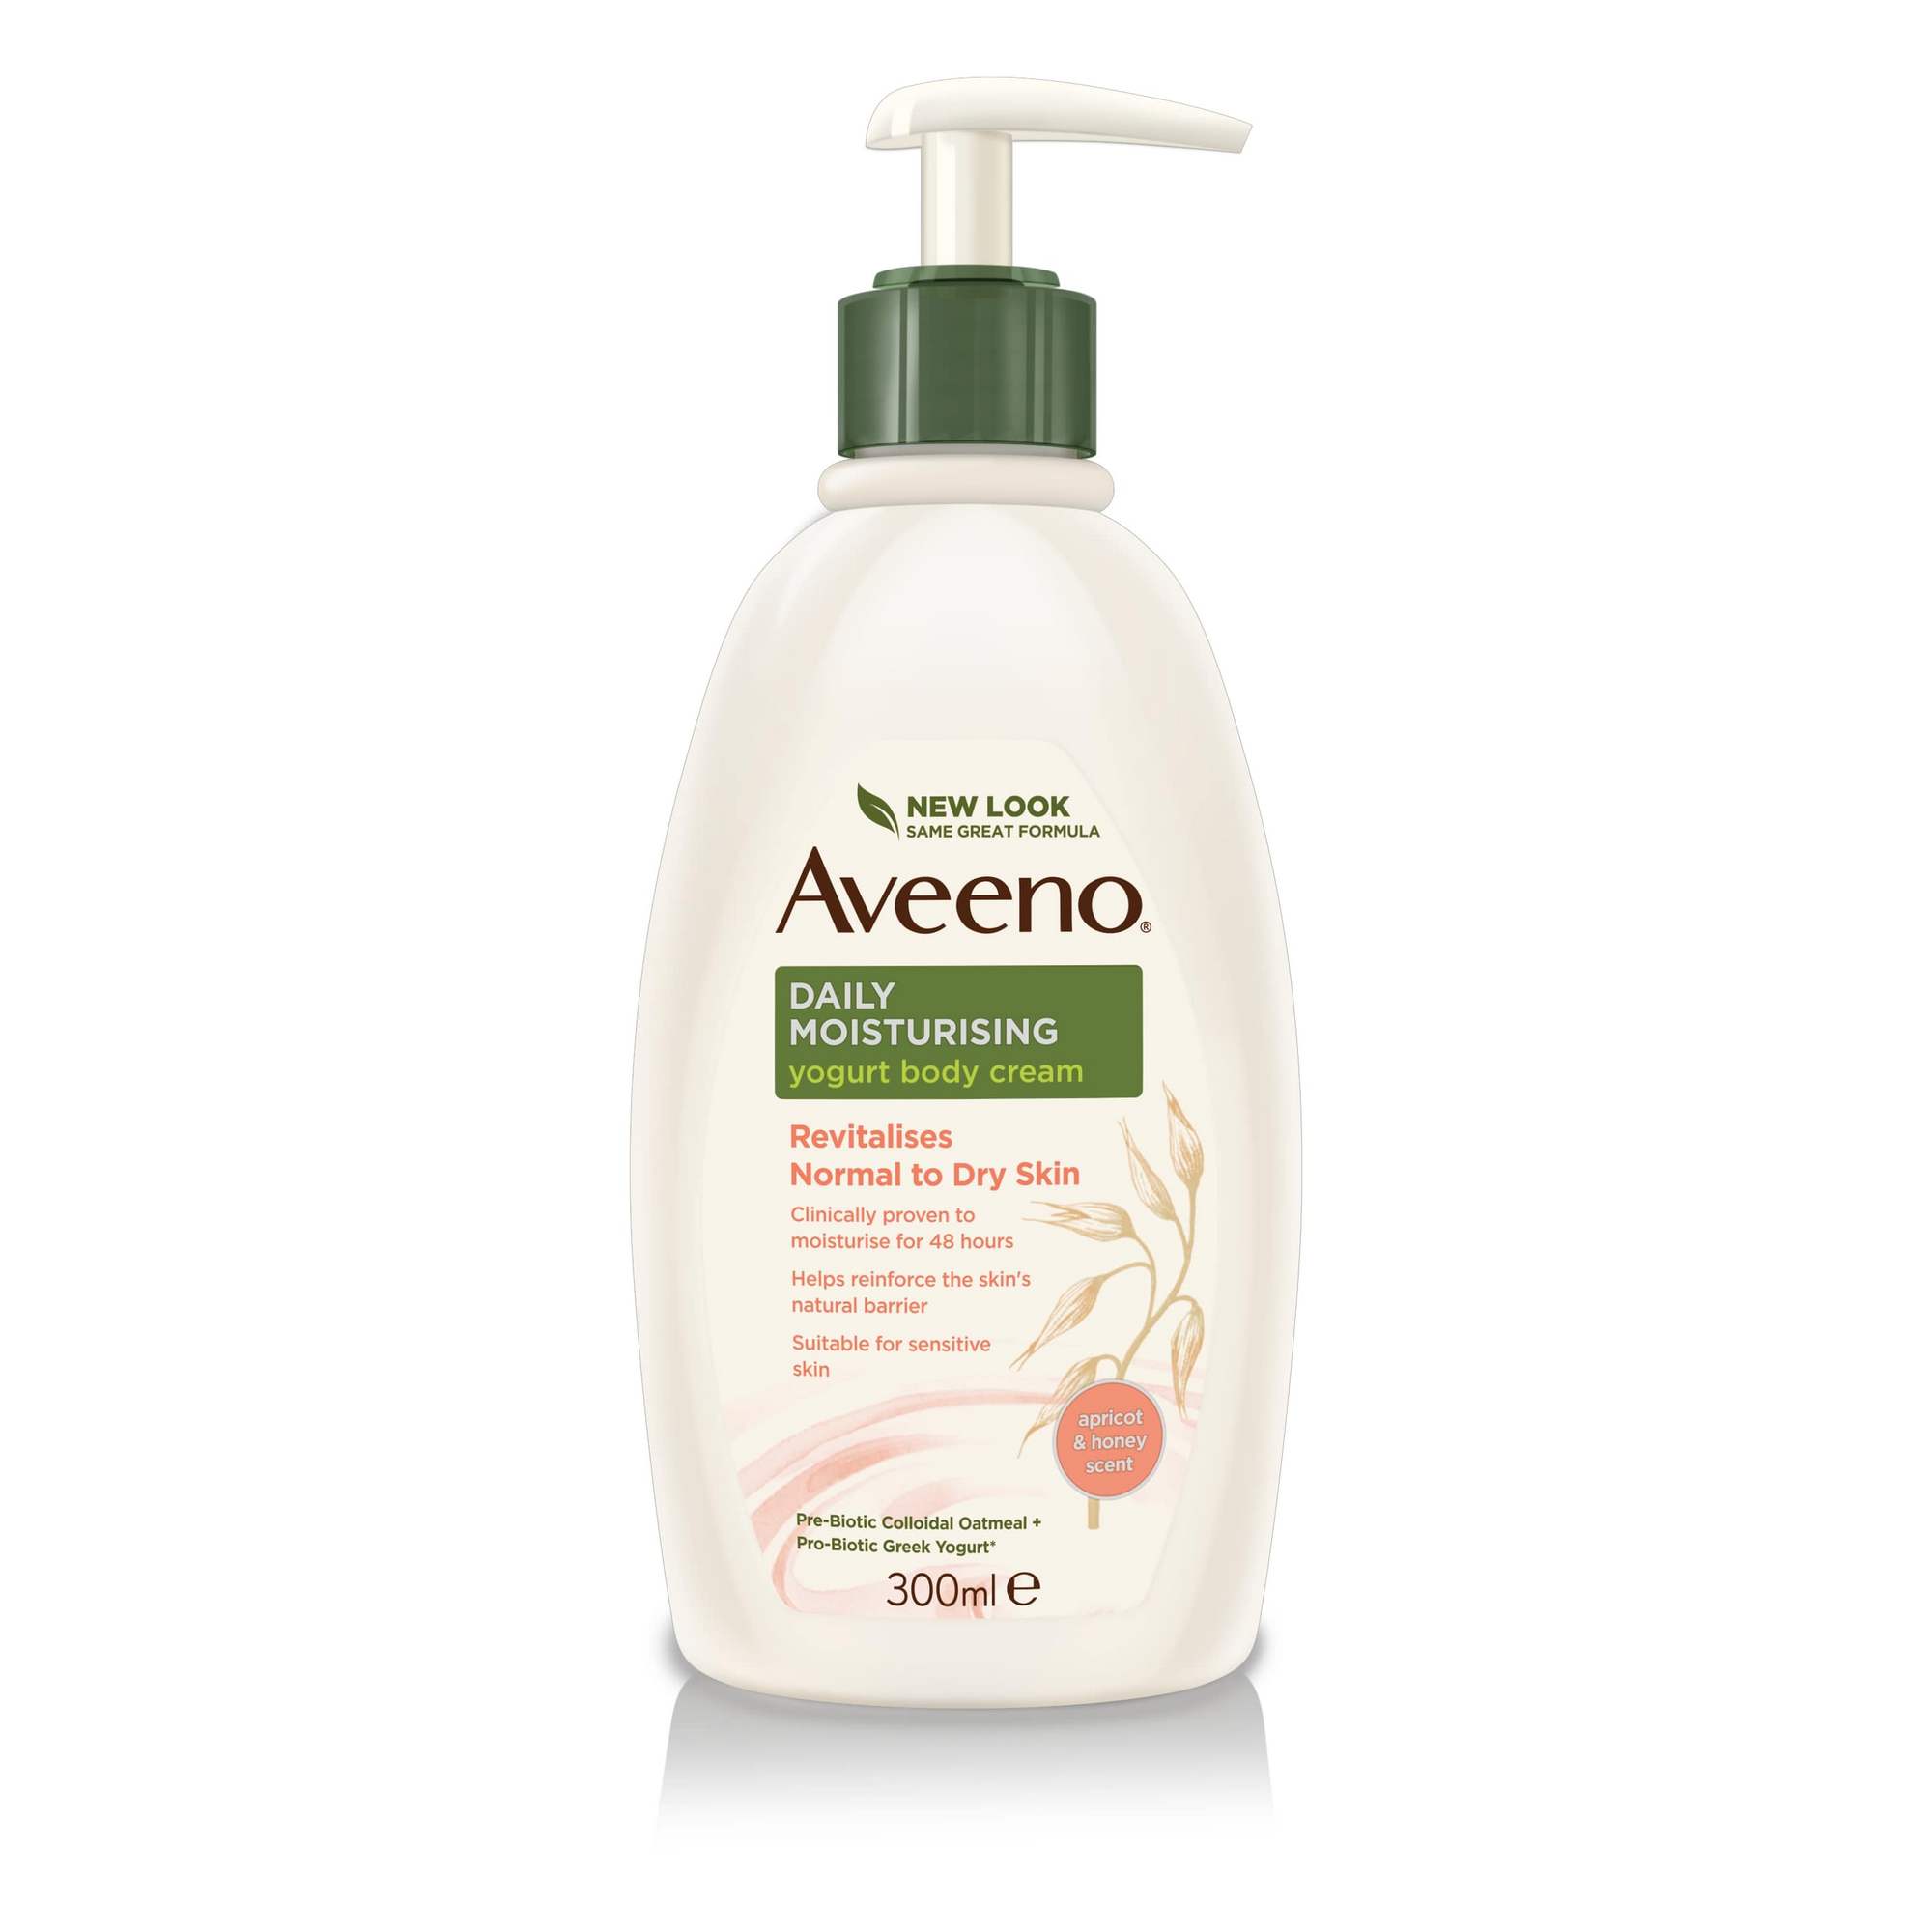 Aveeno Daily Moisturising Yogurt Body Cream Apricot &amp; Honey scent 300ml